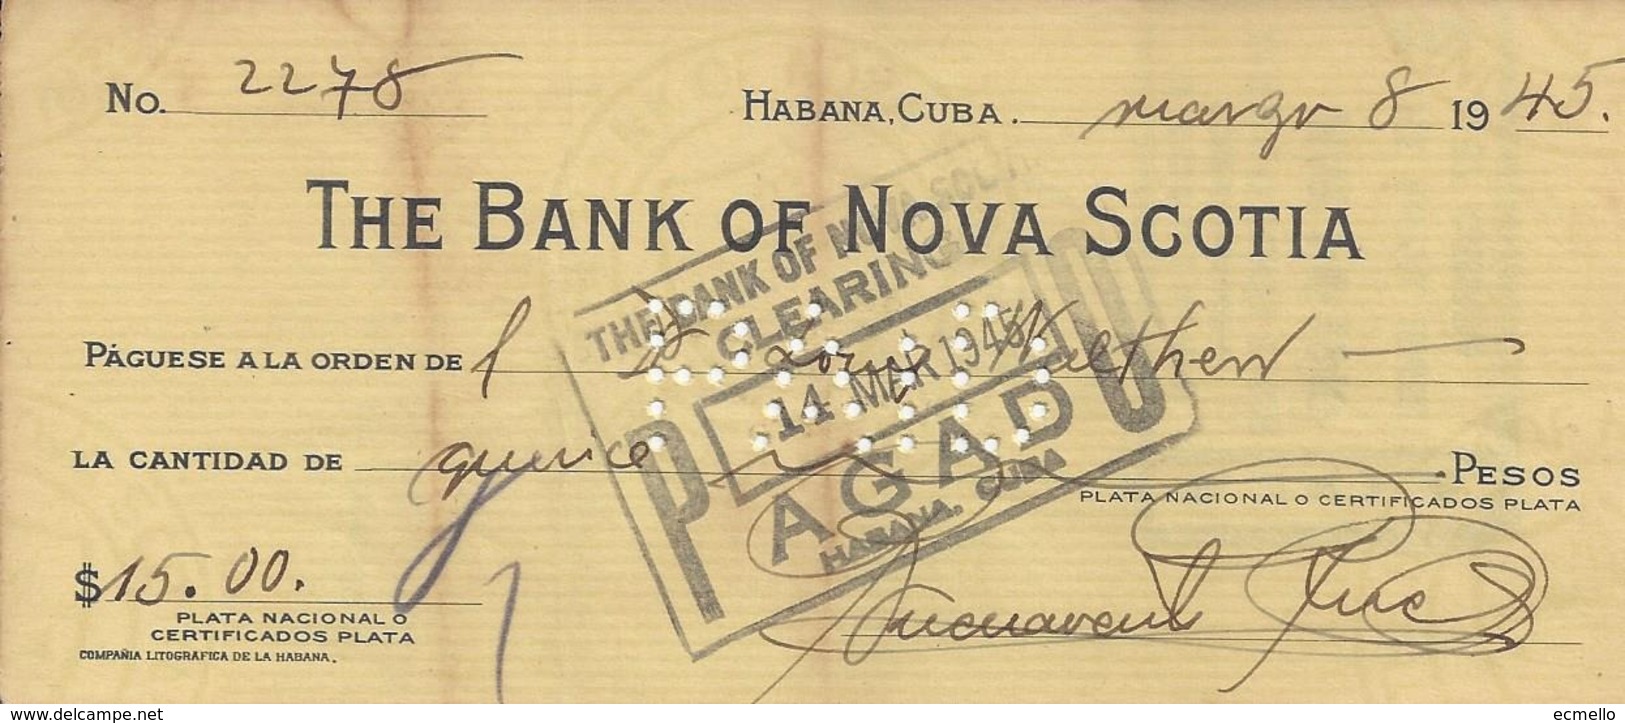 CHEQUE CHECK CUBA BANK OF NOVA SCOTIA AG. HAVANA 1945 - Cheques En Traveller's Cheques